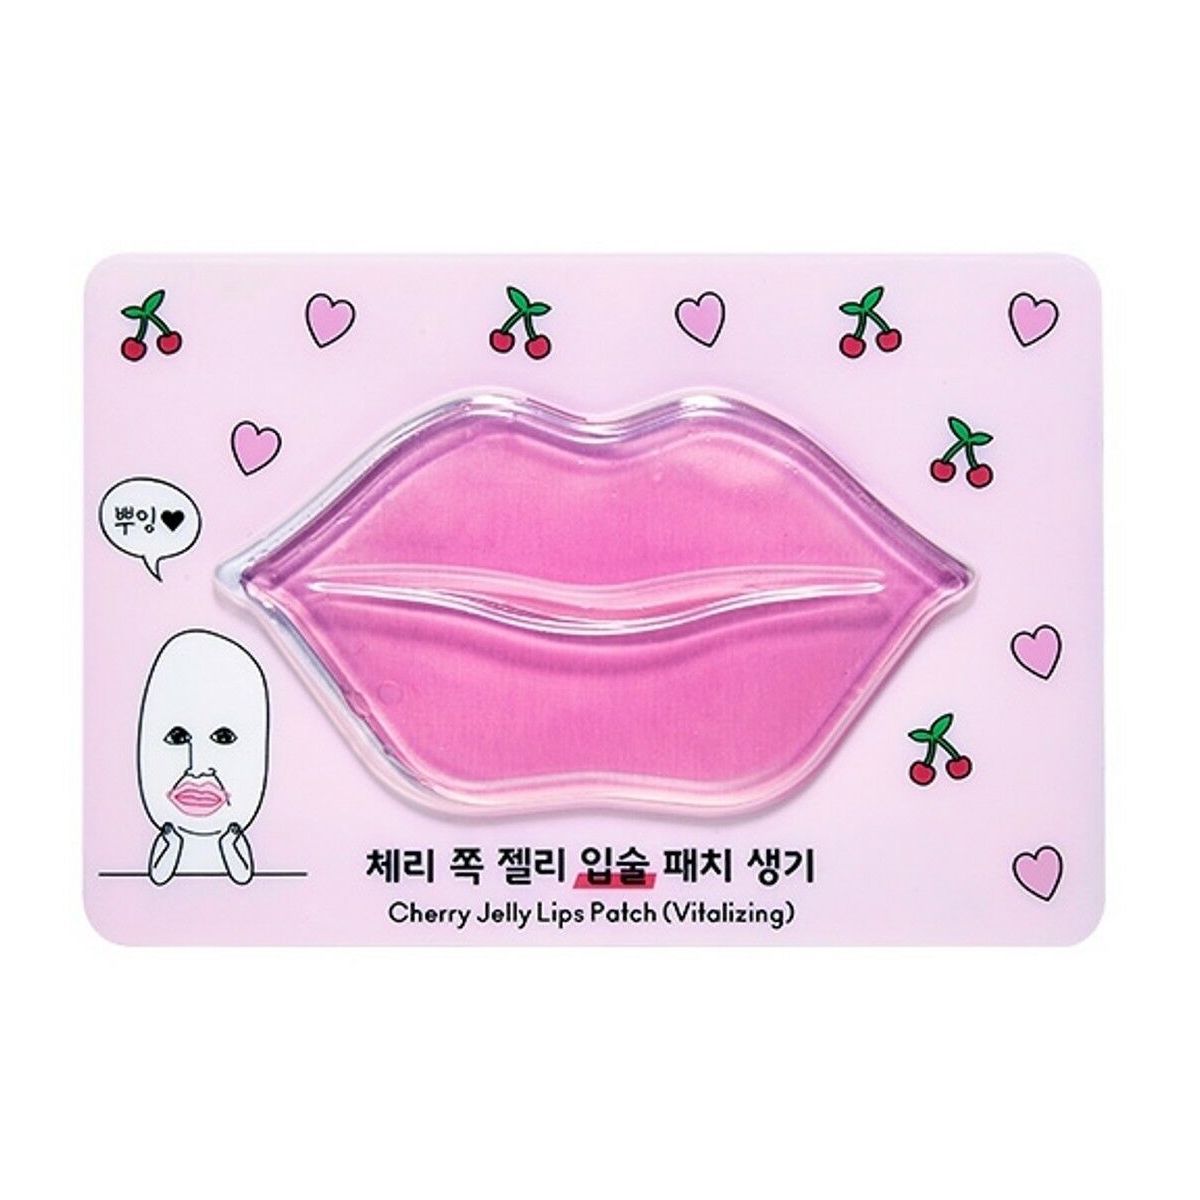 Маска для губ как использовать. Etude House Cherry Jelly Lips Patch (Vitalizing). Маска губы. Патчи для губ. Бумажная маска для губ.